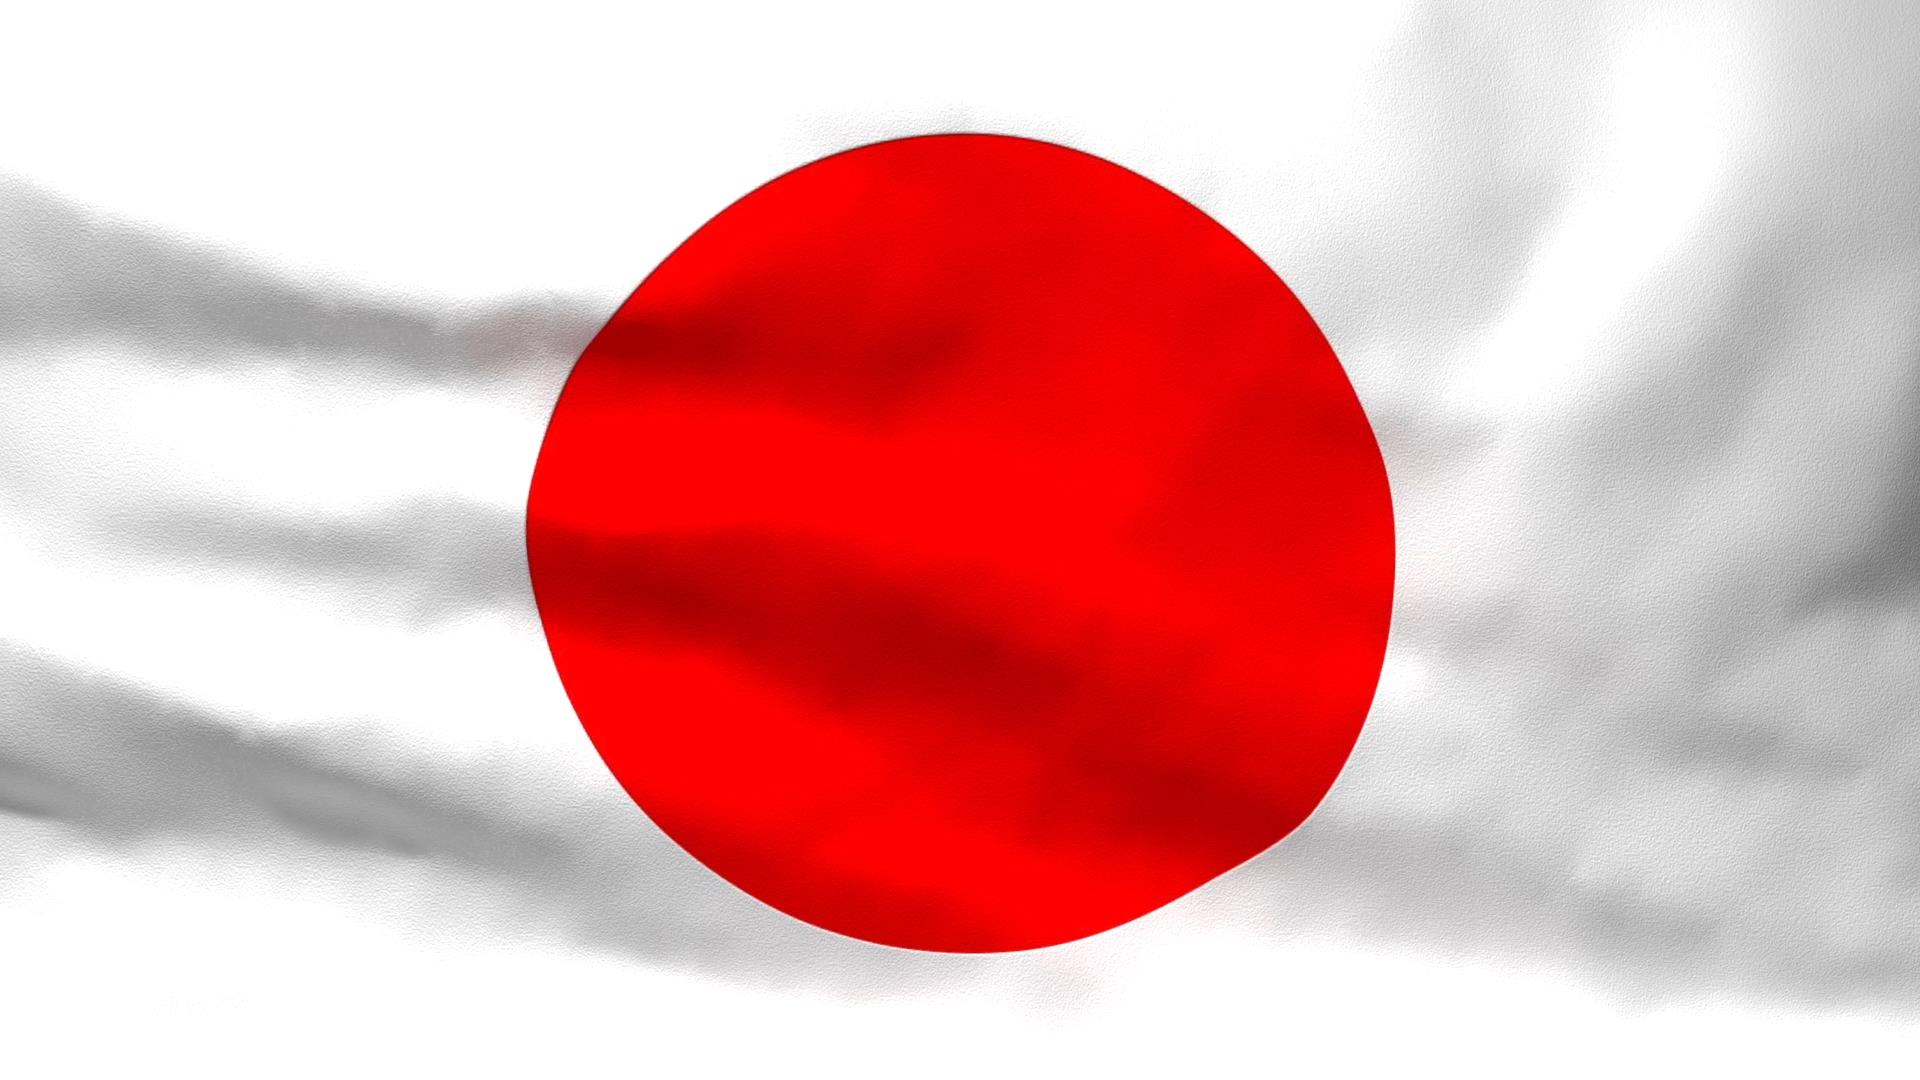 Ý nghĩa quốc kỳ Nhật Bản: Quốc kỳ Nhật Bản rất đặc biệt và mang ý nghĩa sâu sắc. Màu trắng tượng trưng cho lòng trung thành, lòng trắng tinh khiết và sự tinh tế. Còn màu đỏ biểu thị sự dũng cảm, lòng đam mê và tình yêu đối với đất nước. Cùng với nhau, hai màu này tạo thành một biểu tượng tuyệt đẹp, thể hiện sự kiên cường và nhiệt huyết của người Nhật.